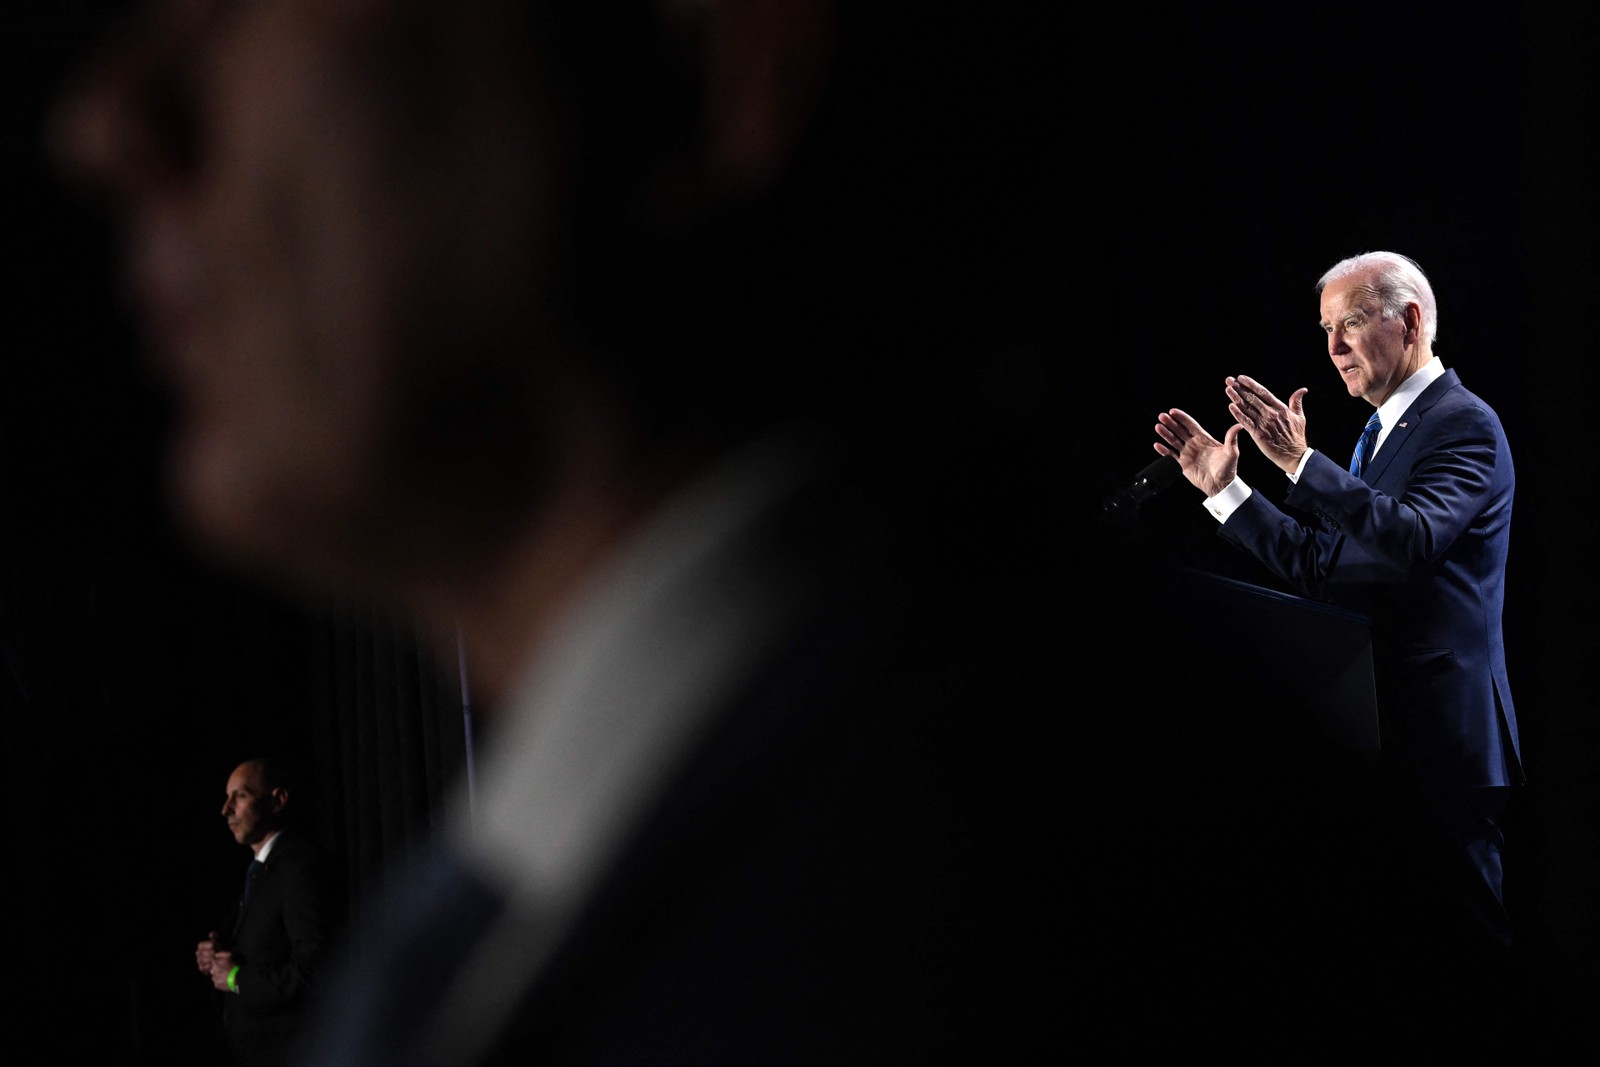 presidente dos EUA, Joe Biden, gesticula enquanto fala durante a conferência democrata em Maryland — Foto: ANDREW CABALLERO-REYNOLDS/AFP